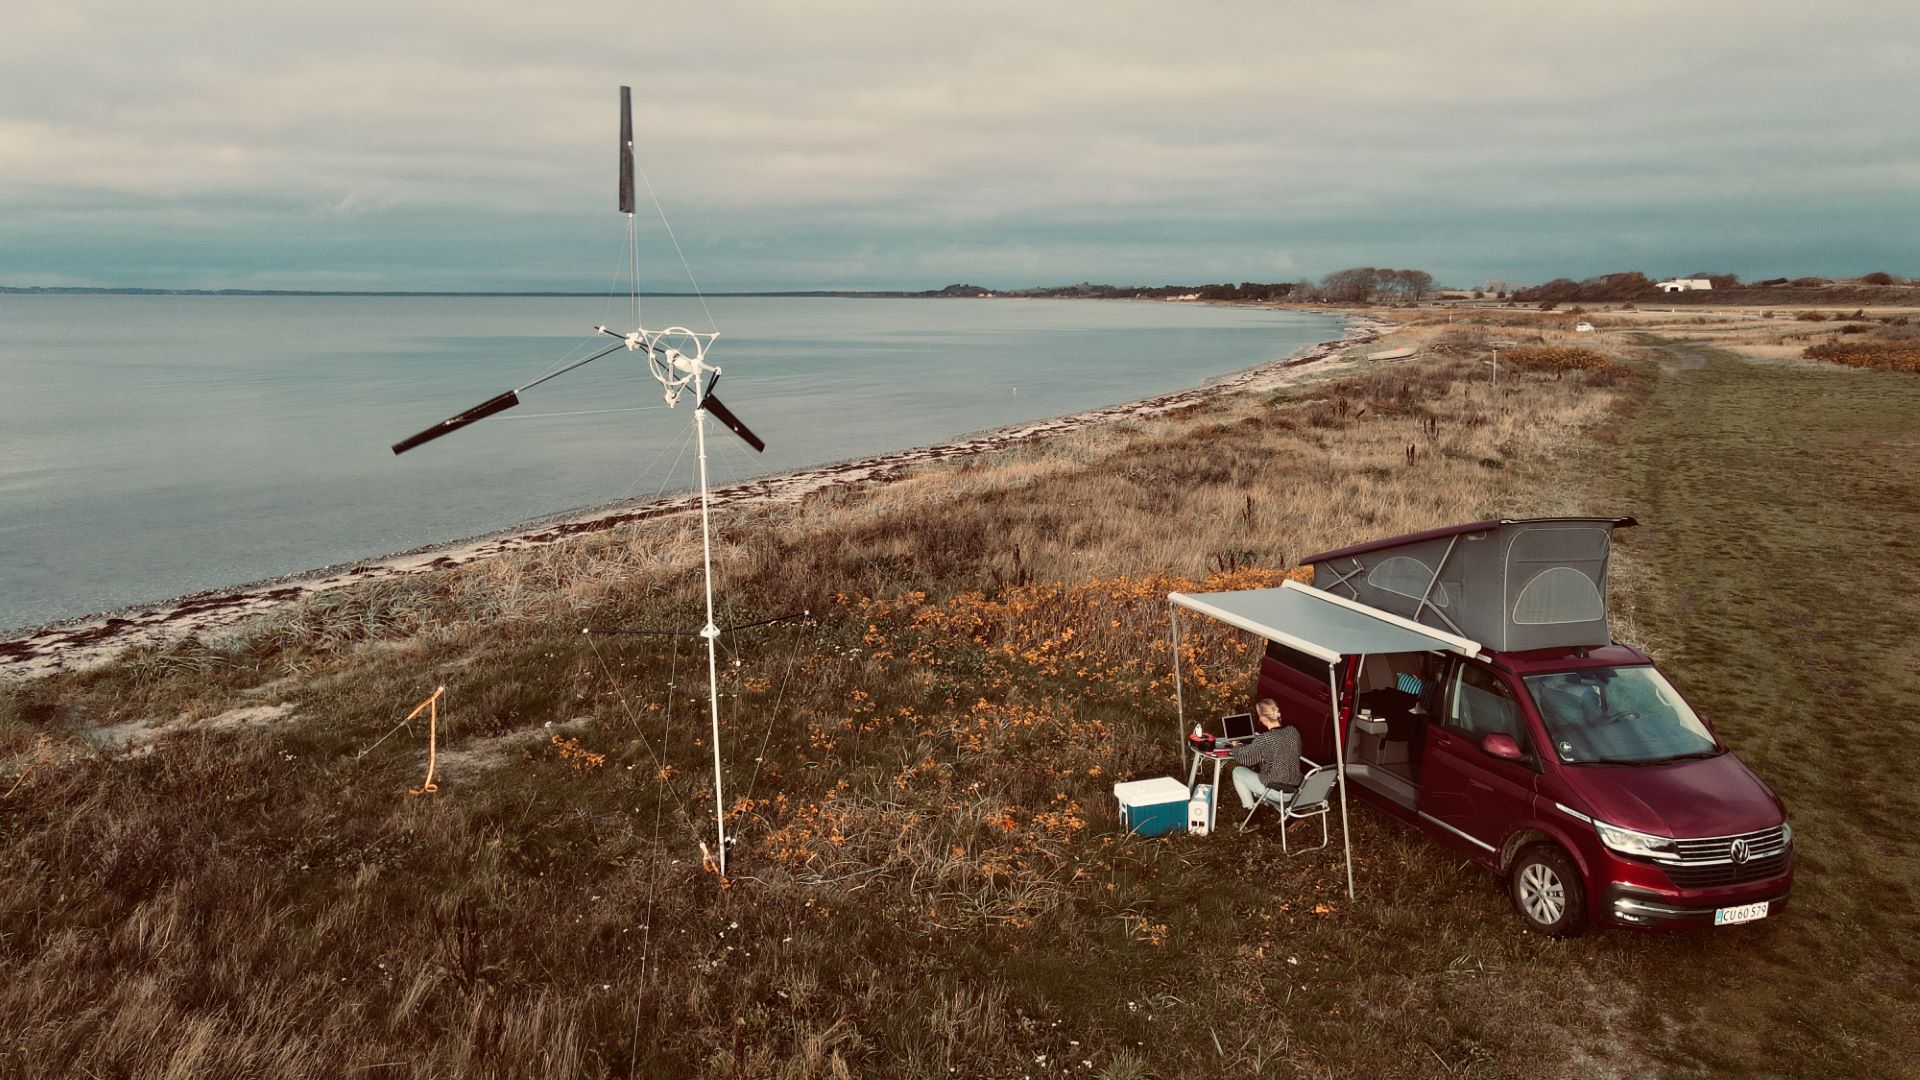 Kitex vindmølle ved siden af autocamper på en strand.